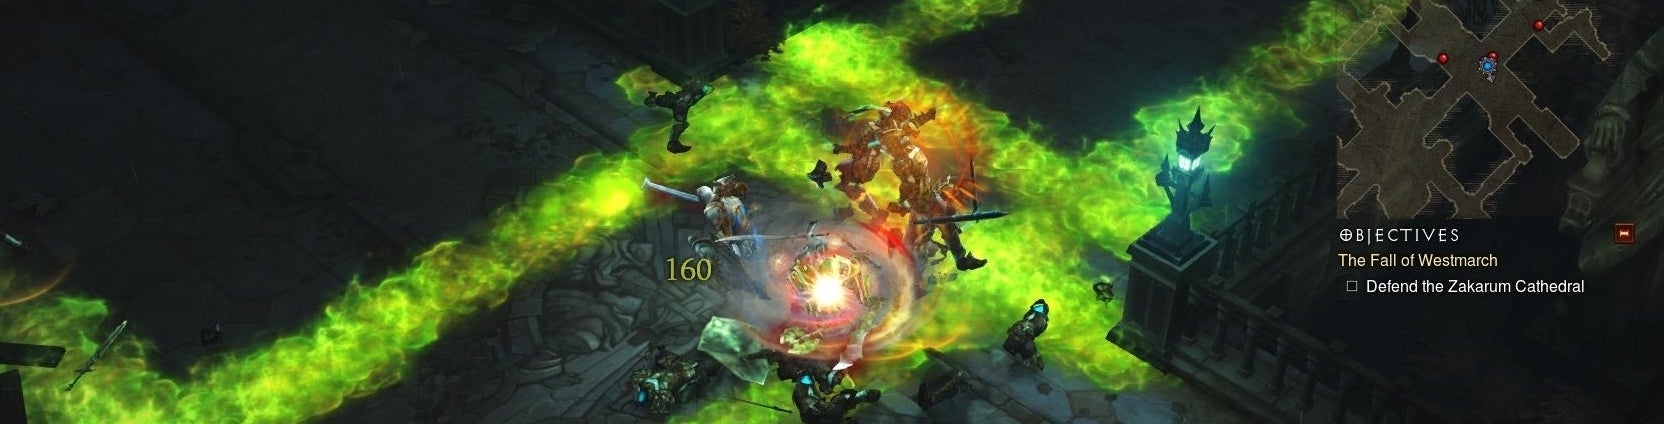 Image for Už žádná chyba 37, holedbá se Blizzard pár hodin před startem Diablo 3 datadisku